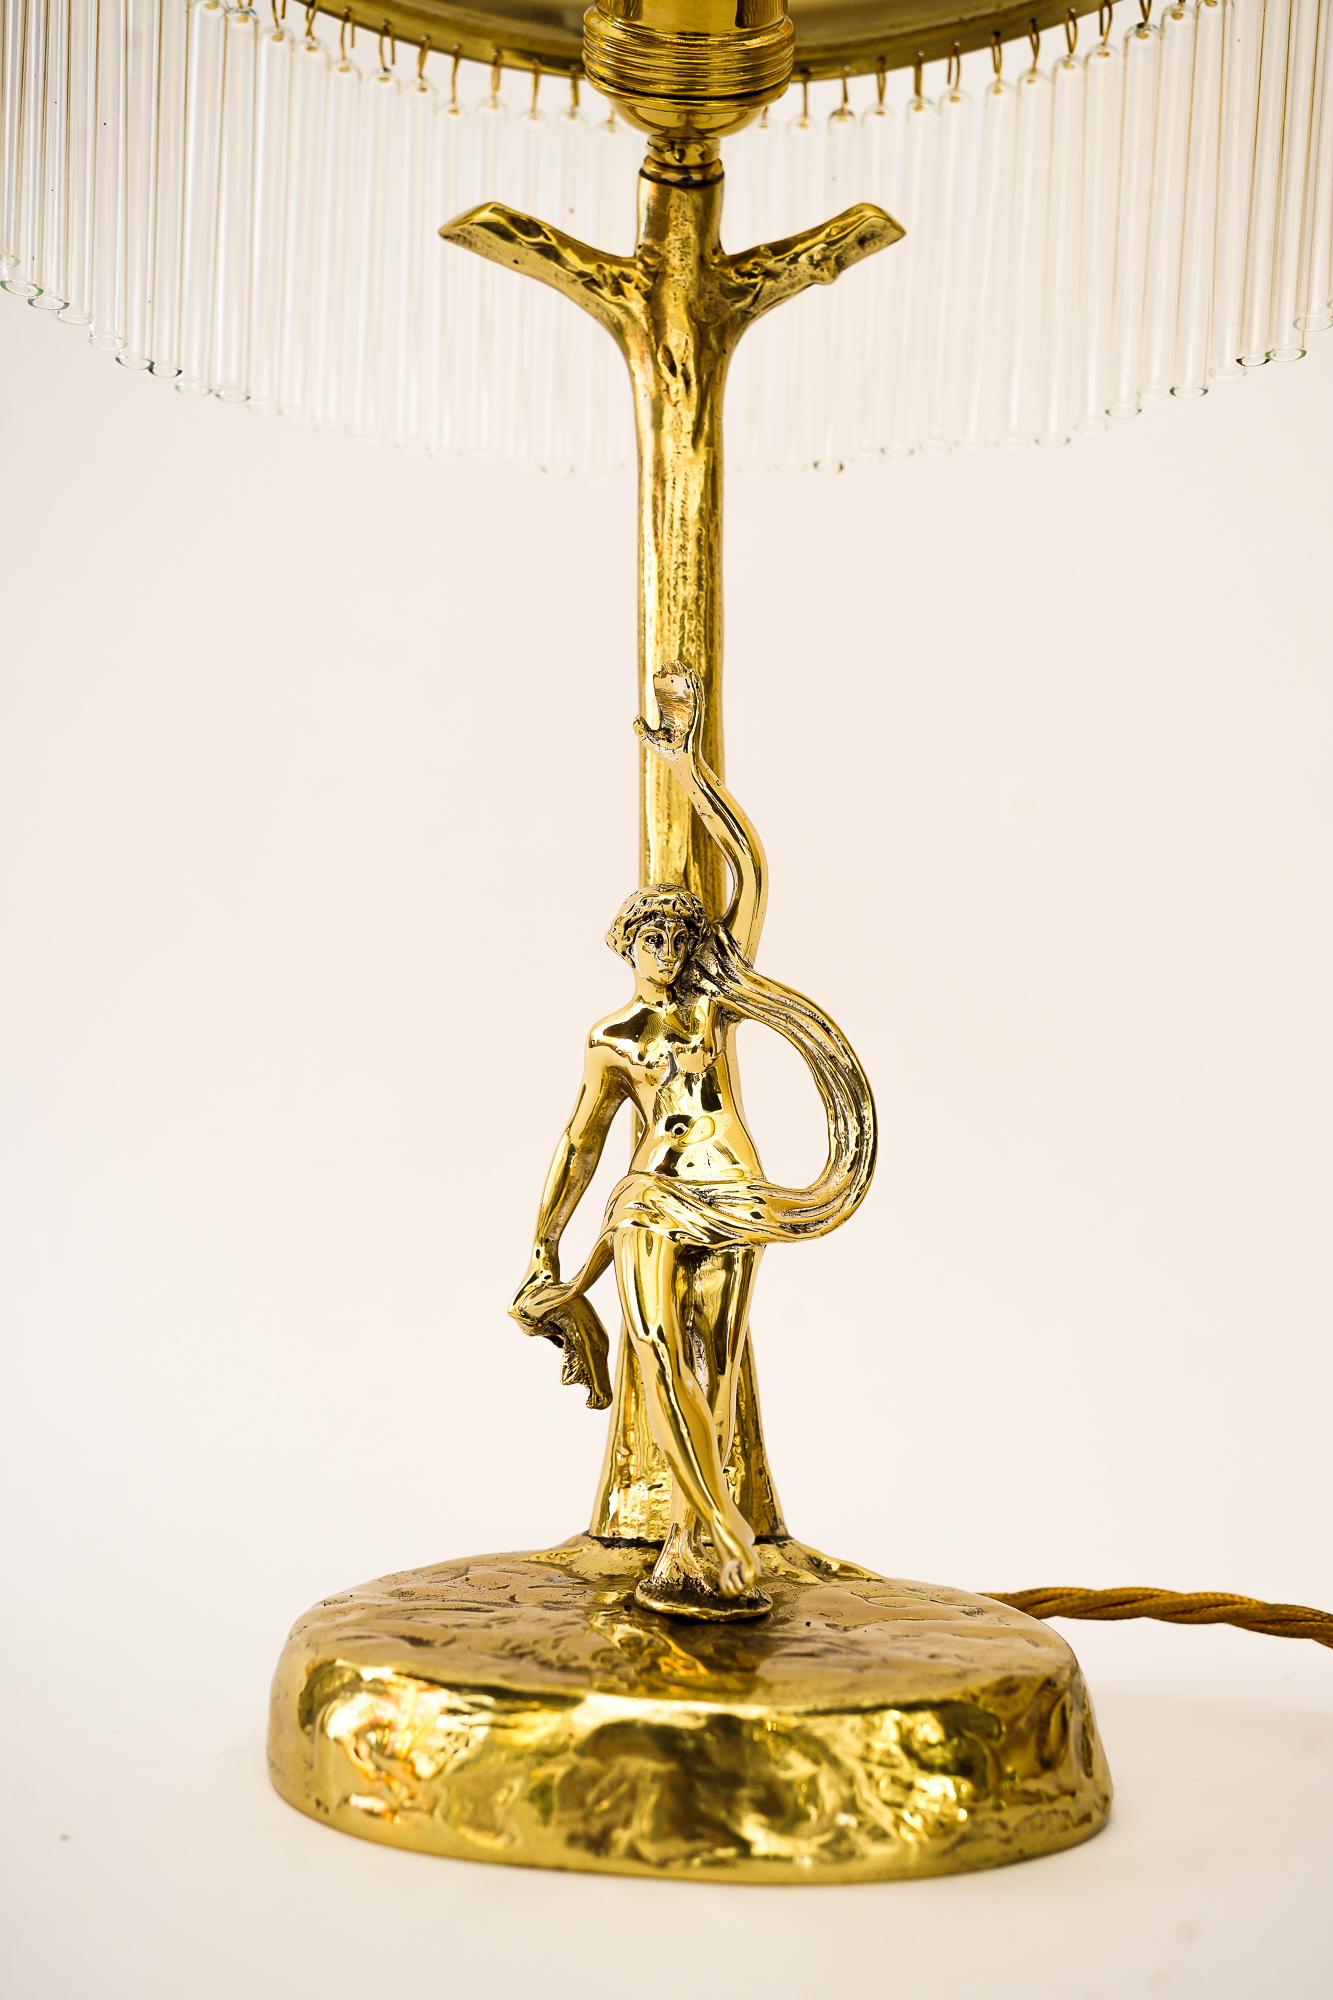 Jugendstil-Tischlampe mit originalem antikem Glasschirm Vienna aus den 1910er Jahren
Messing poliert und emailliert
Die Glasstäbe werden ersetzt ( neu )